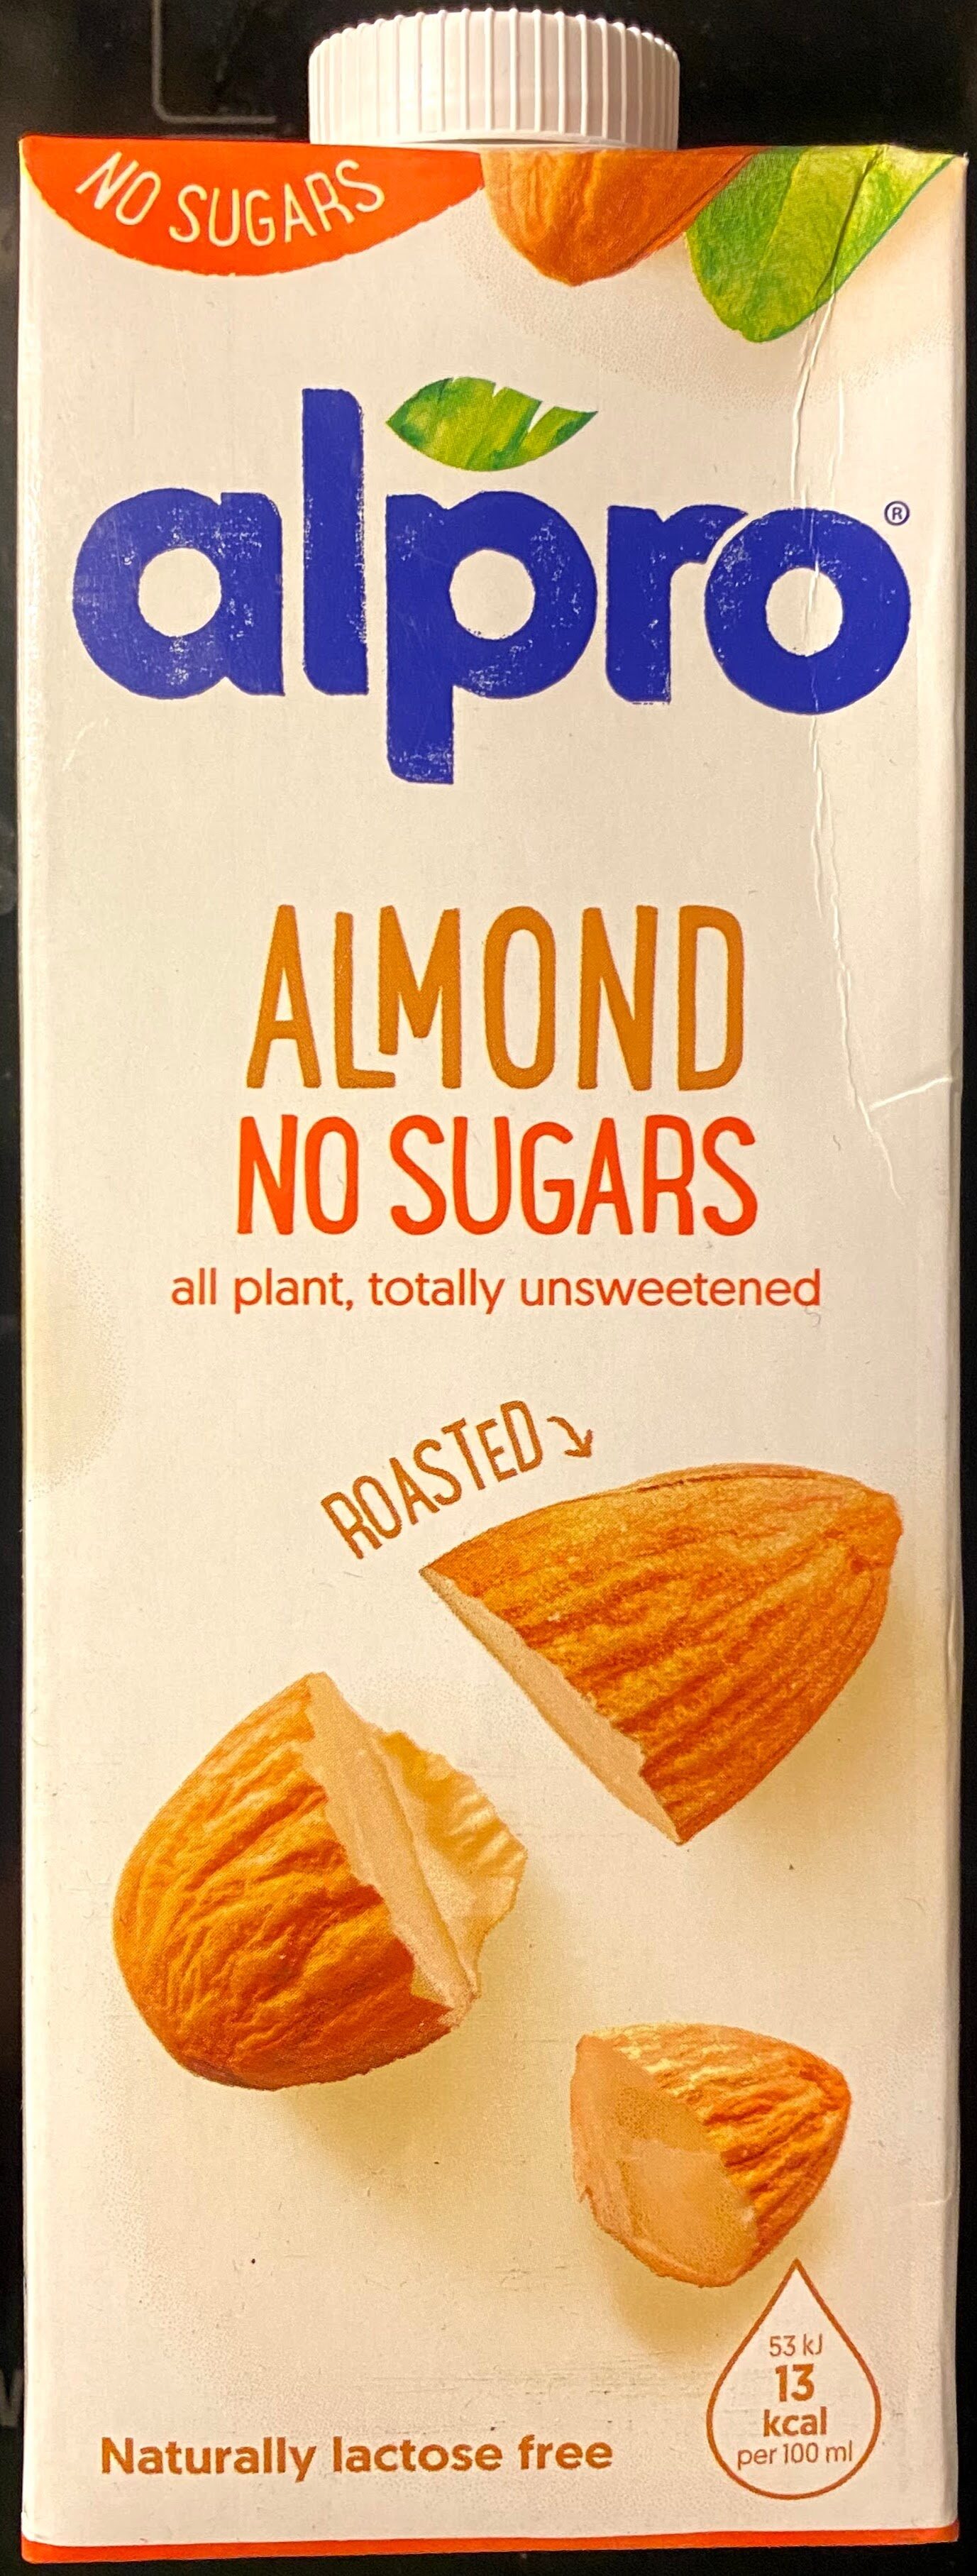 Almond No Sugars - Produkt - en